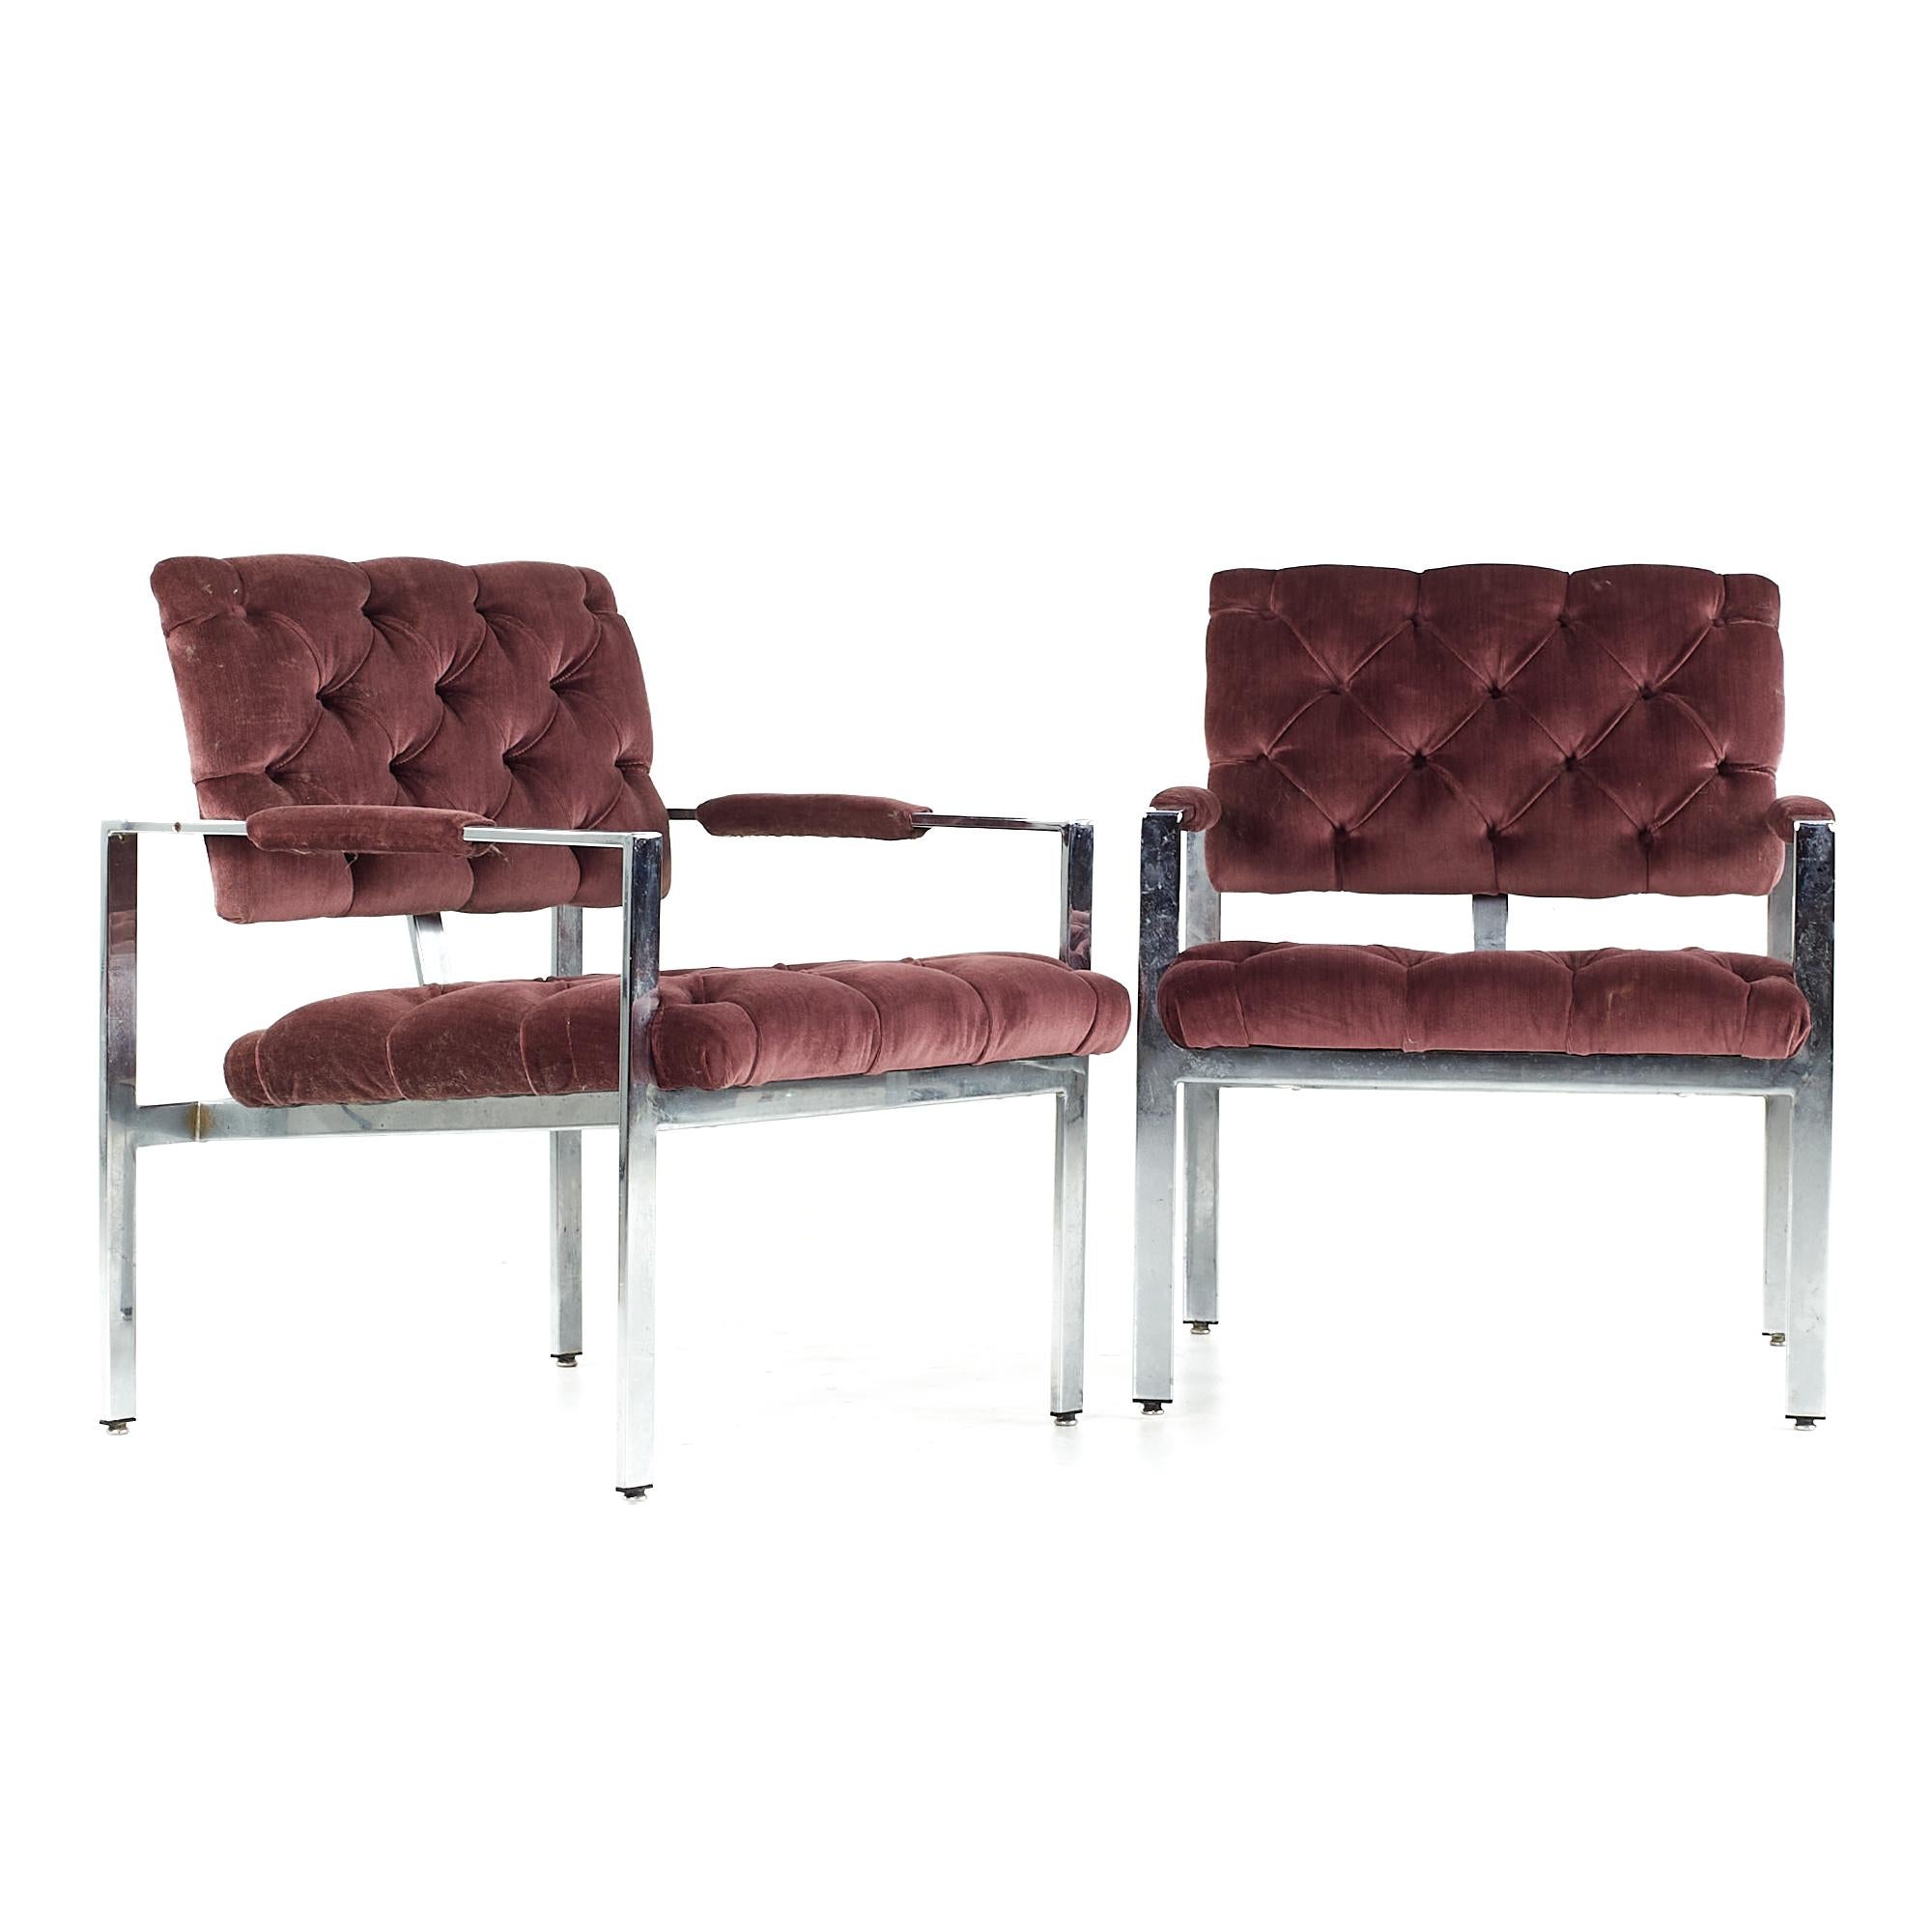 Milo Baughman für Thayer Coggin Mid Century Chrome Tufted Arm Chairs - Paar

Jeder Stuhl misst: 25,75 breit x 28,5 tief x 31,5 Zoll hoch, mit einer Sitzhöhe von 17 und Armhöhe/Stuhlabstand von 22,5 Zoll

Alle Möbelstücke sind in einem so genannten